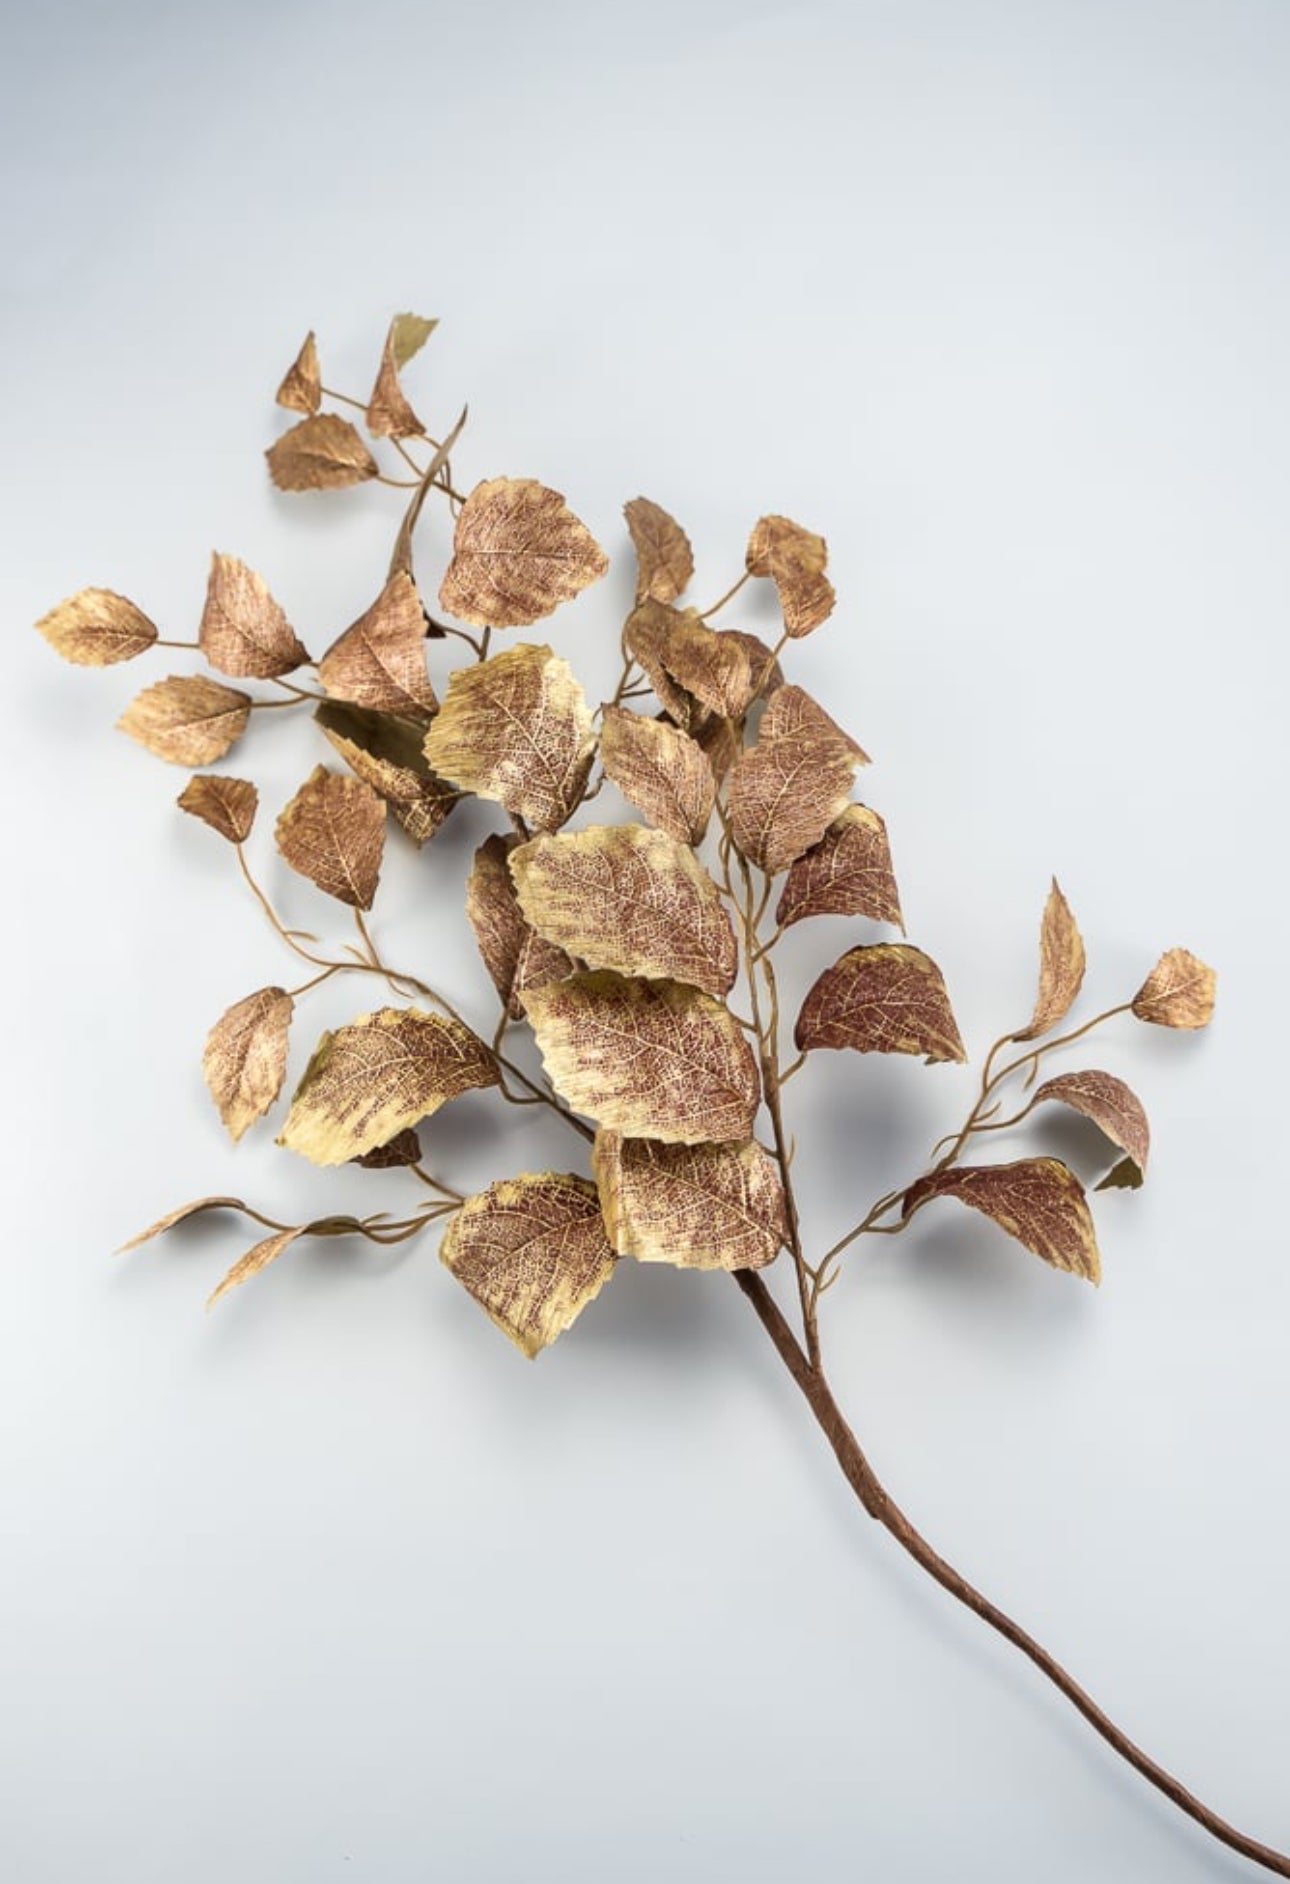 Metallic leaf spray - gold bronze & burgundy - Greenery Marketxg760 bugo